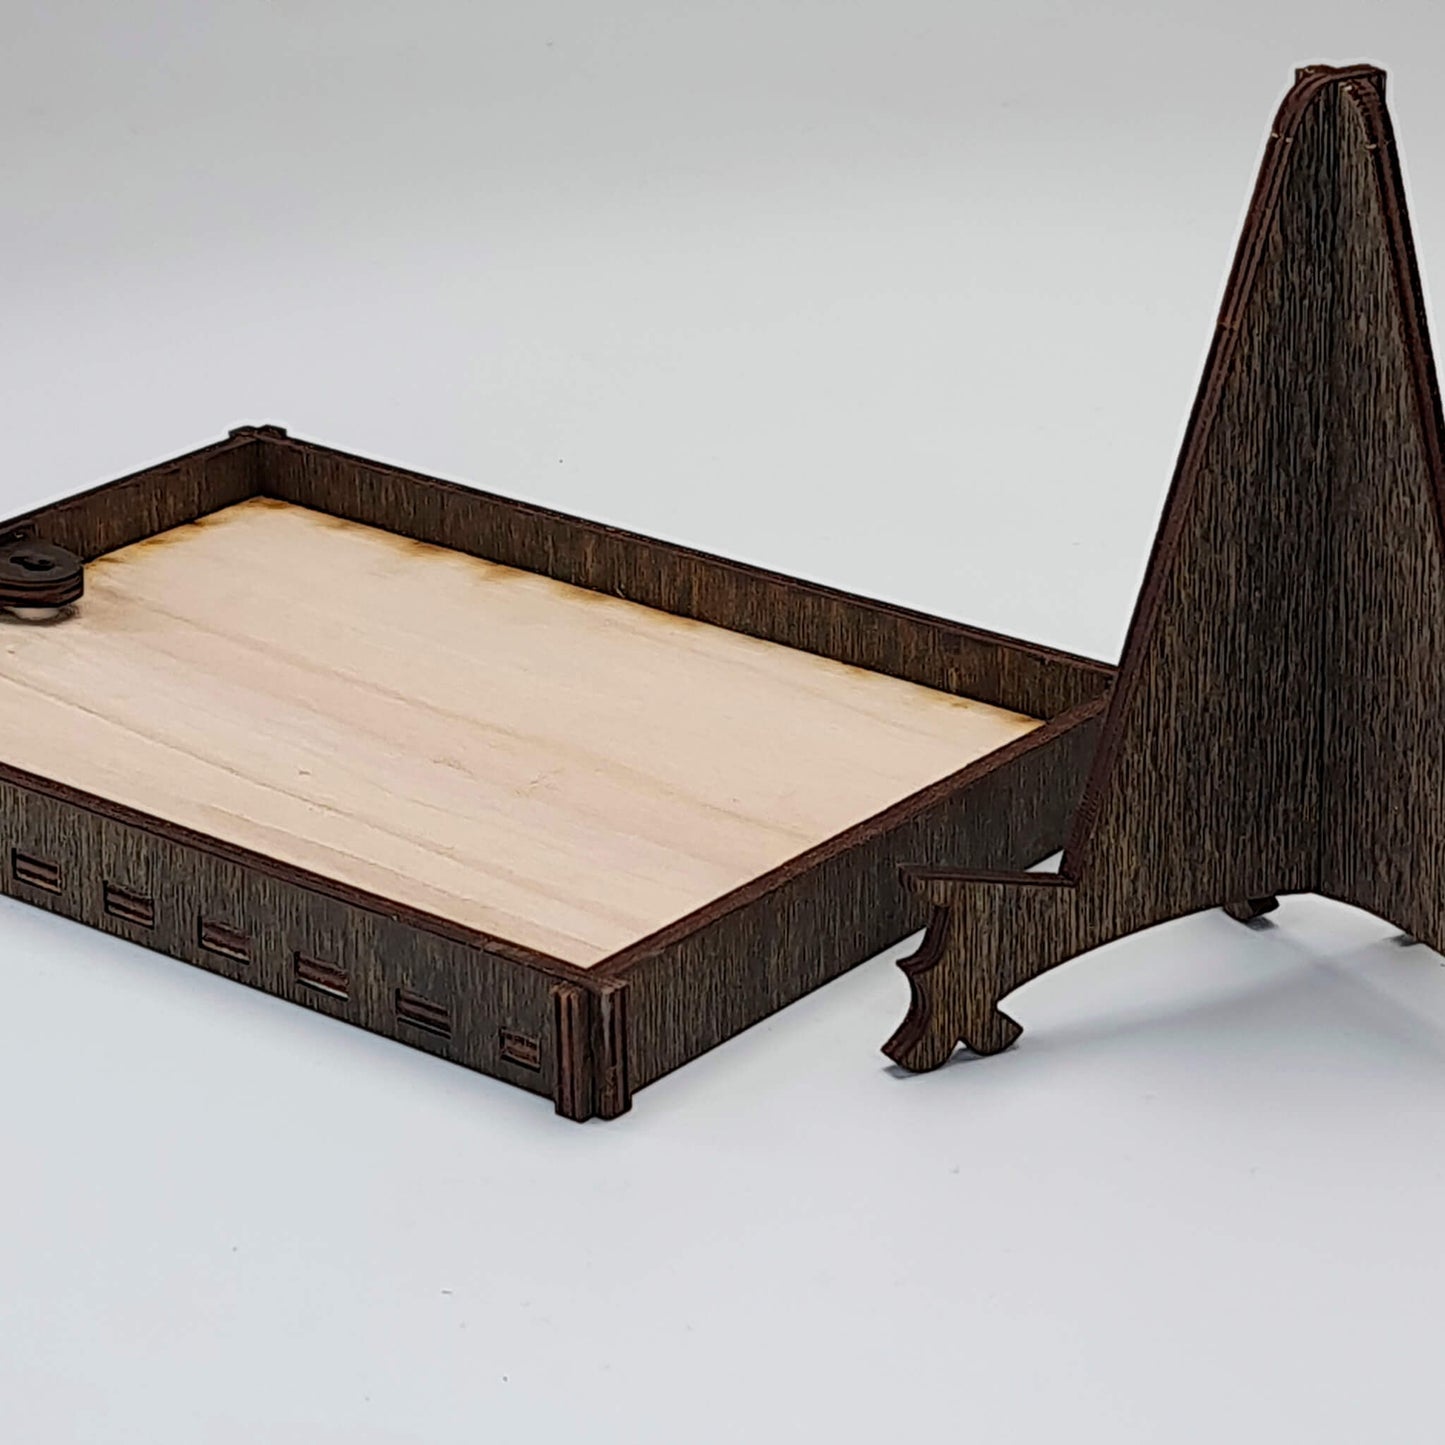 Foto auf Holz gedruckt, mit edlem Rahmen und Ständer, Hochformat, 3 Größen - Nanino Design Onlineshop -